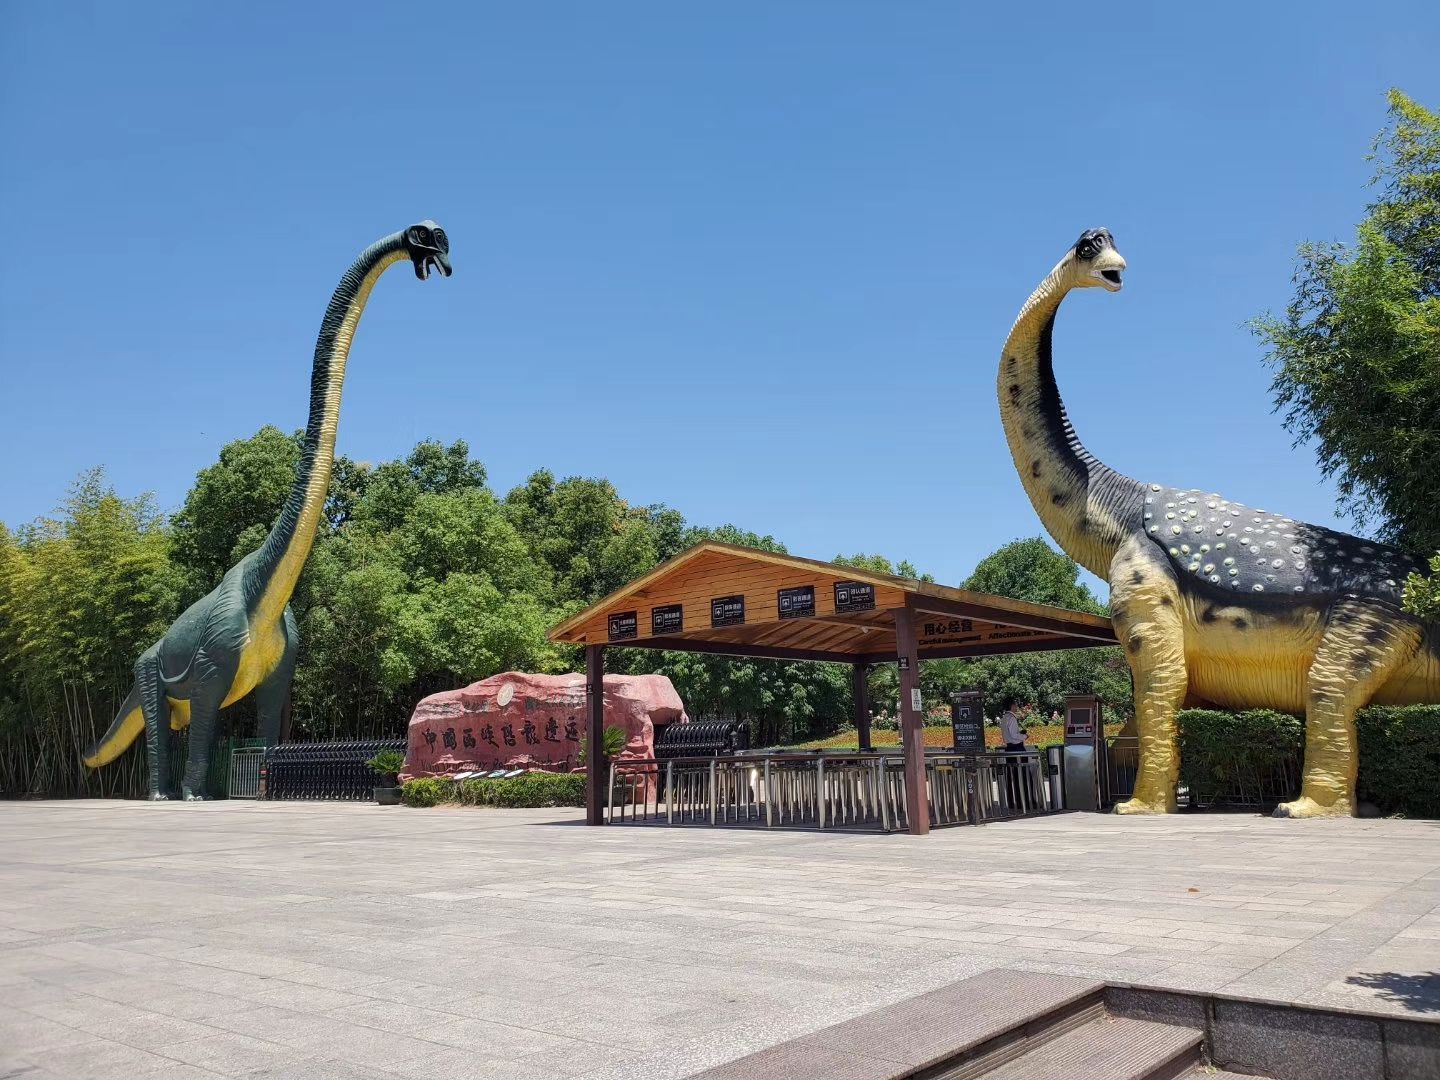 【携程攻略】河源河源恐龙博物馆景点,小朋友愿意去，很小就4个展馆是介绍恐龙的。门票30，有点贵了！